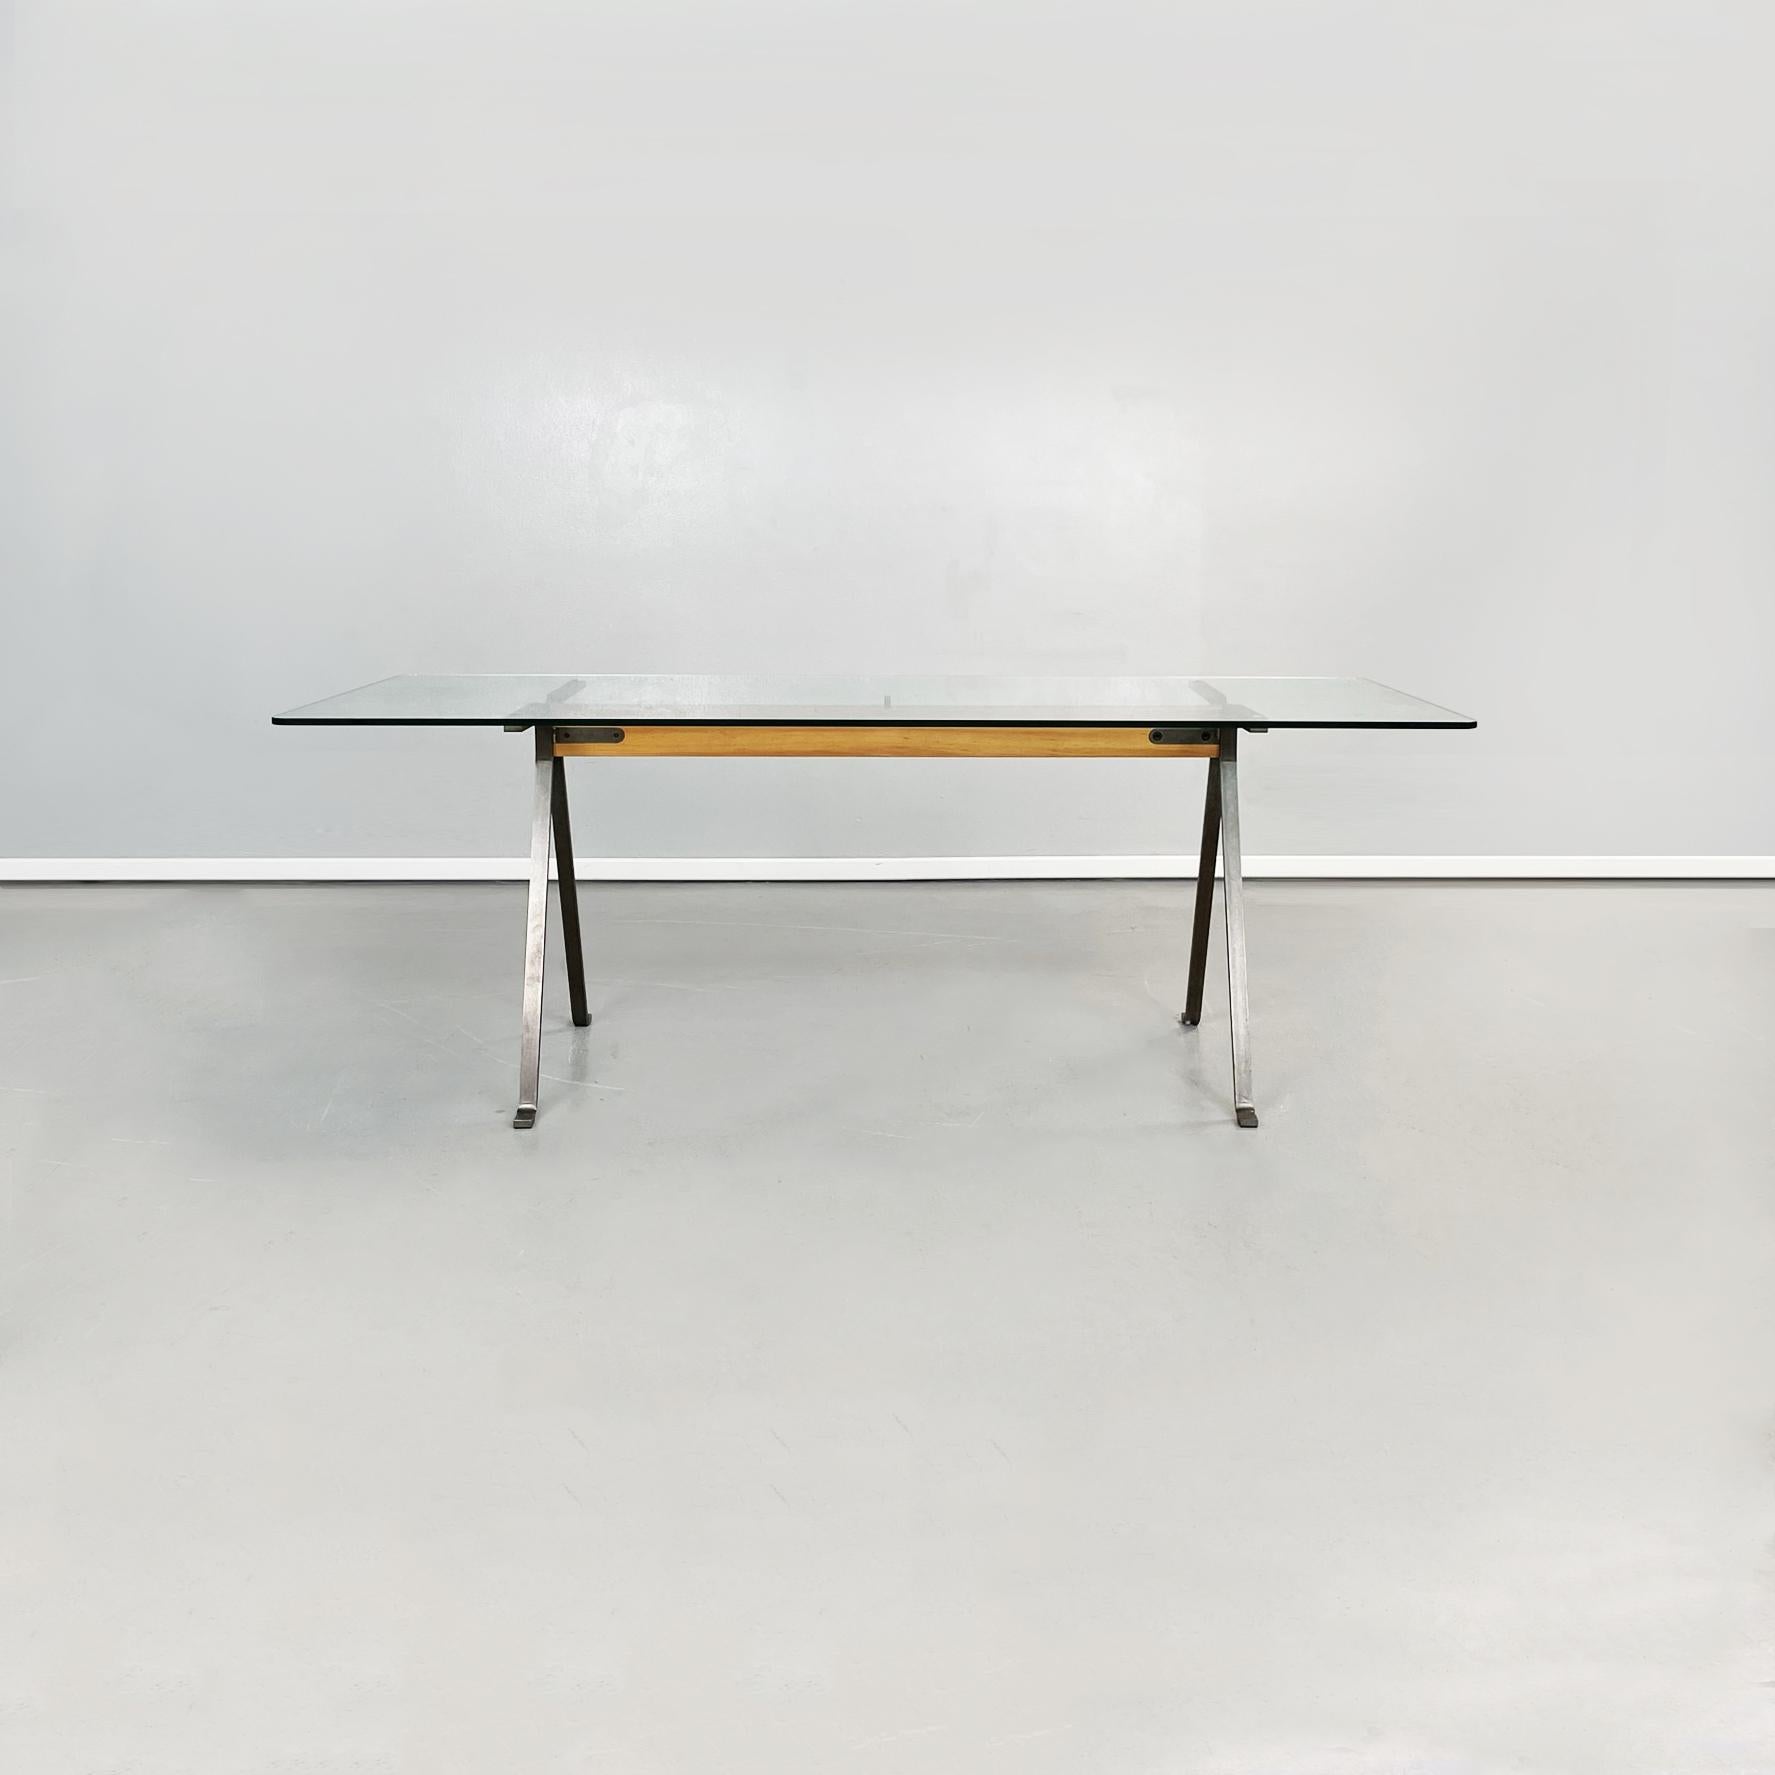 Table de salle à manger moderne italienne en verre, acier et bois Frate par Enzo Mari pour Driade, 1973
Table de salle à manger mod. Frate avec plateau rectangulaire en verre trempé, aux angles arrondis. La structure centrale est composée d'une